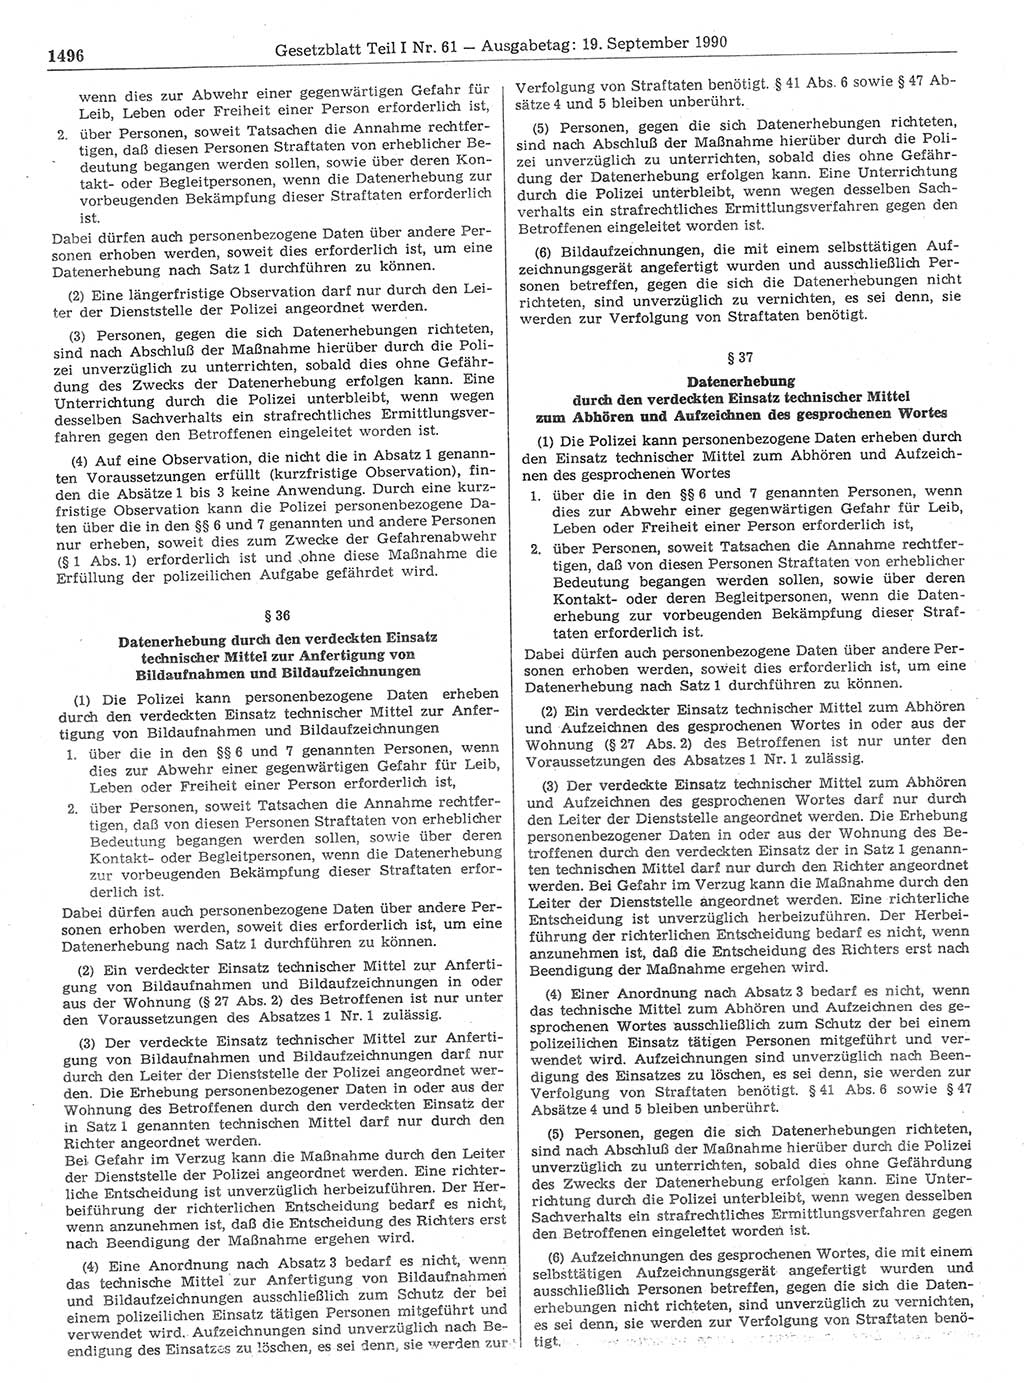 Gesetzblatt (GBl.) der Deutschen Demokratischen Republik (DDR) Teil Ⅰ 1990, Seite 1496 (GBl. DDR Ⅰ 1990, S. 1496)